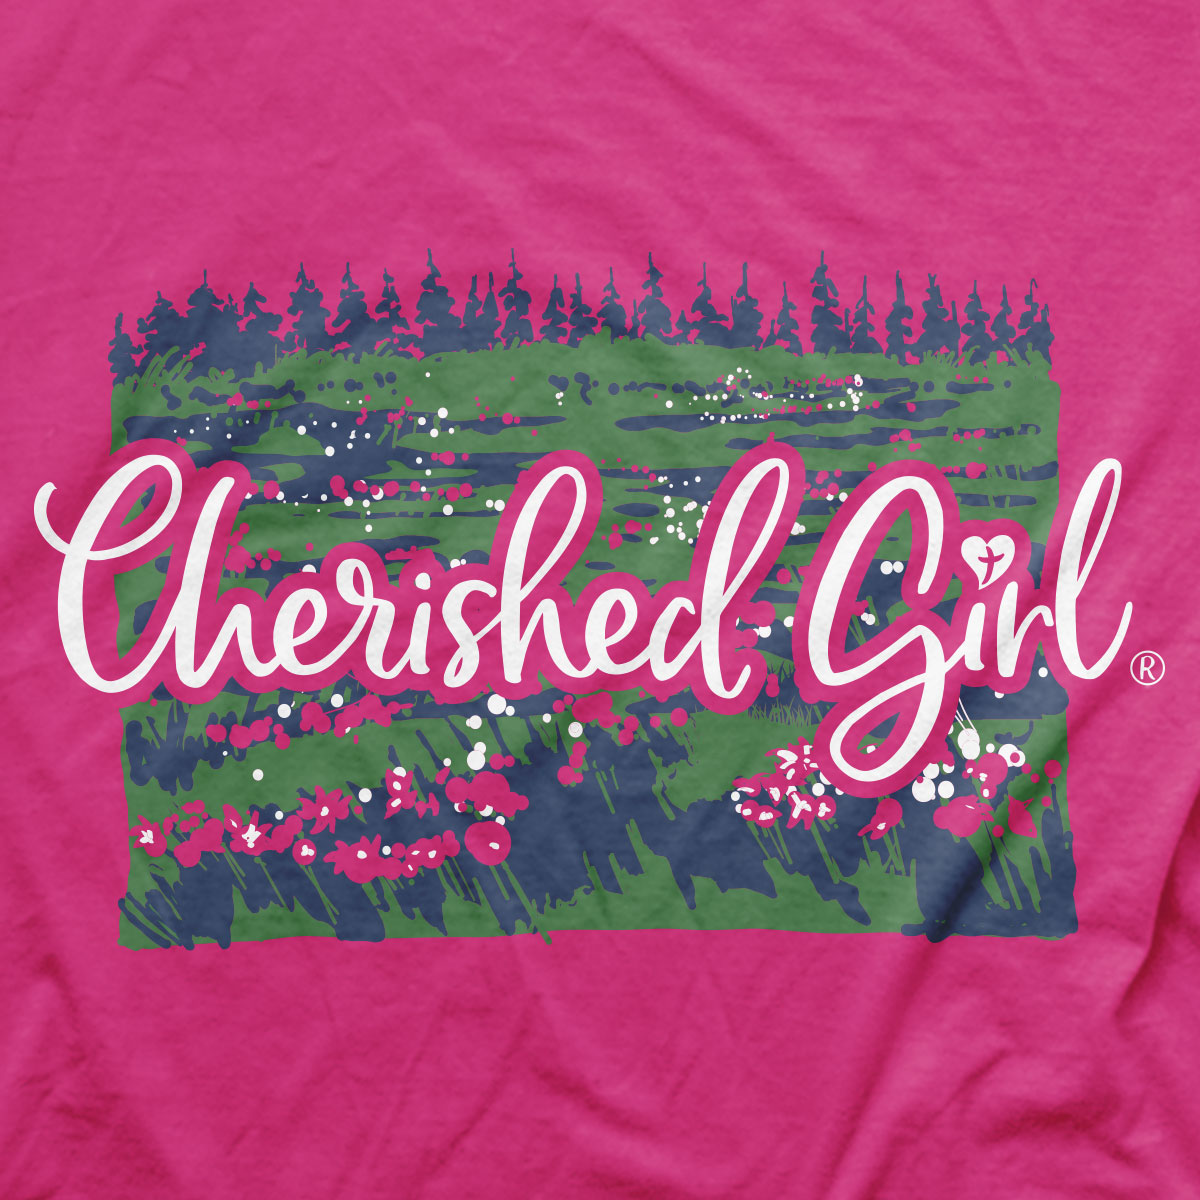 Cherished Girl Womens T-Shirt Lilies